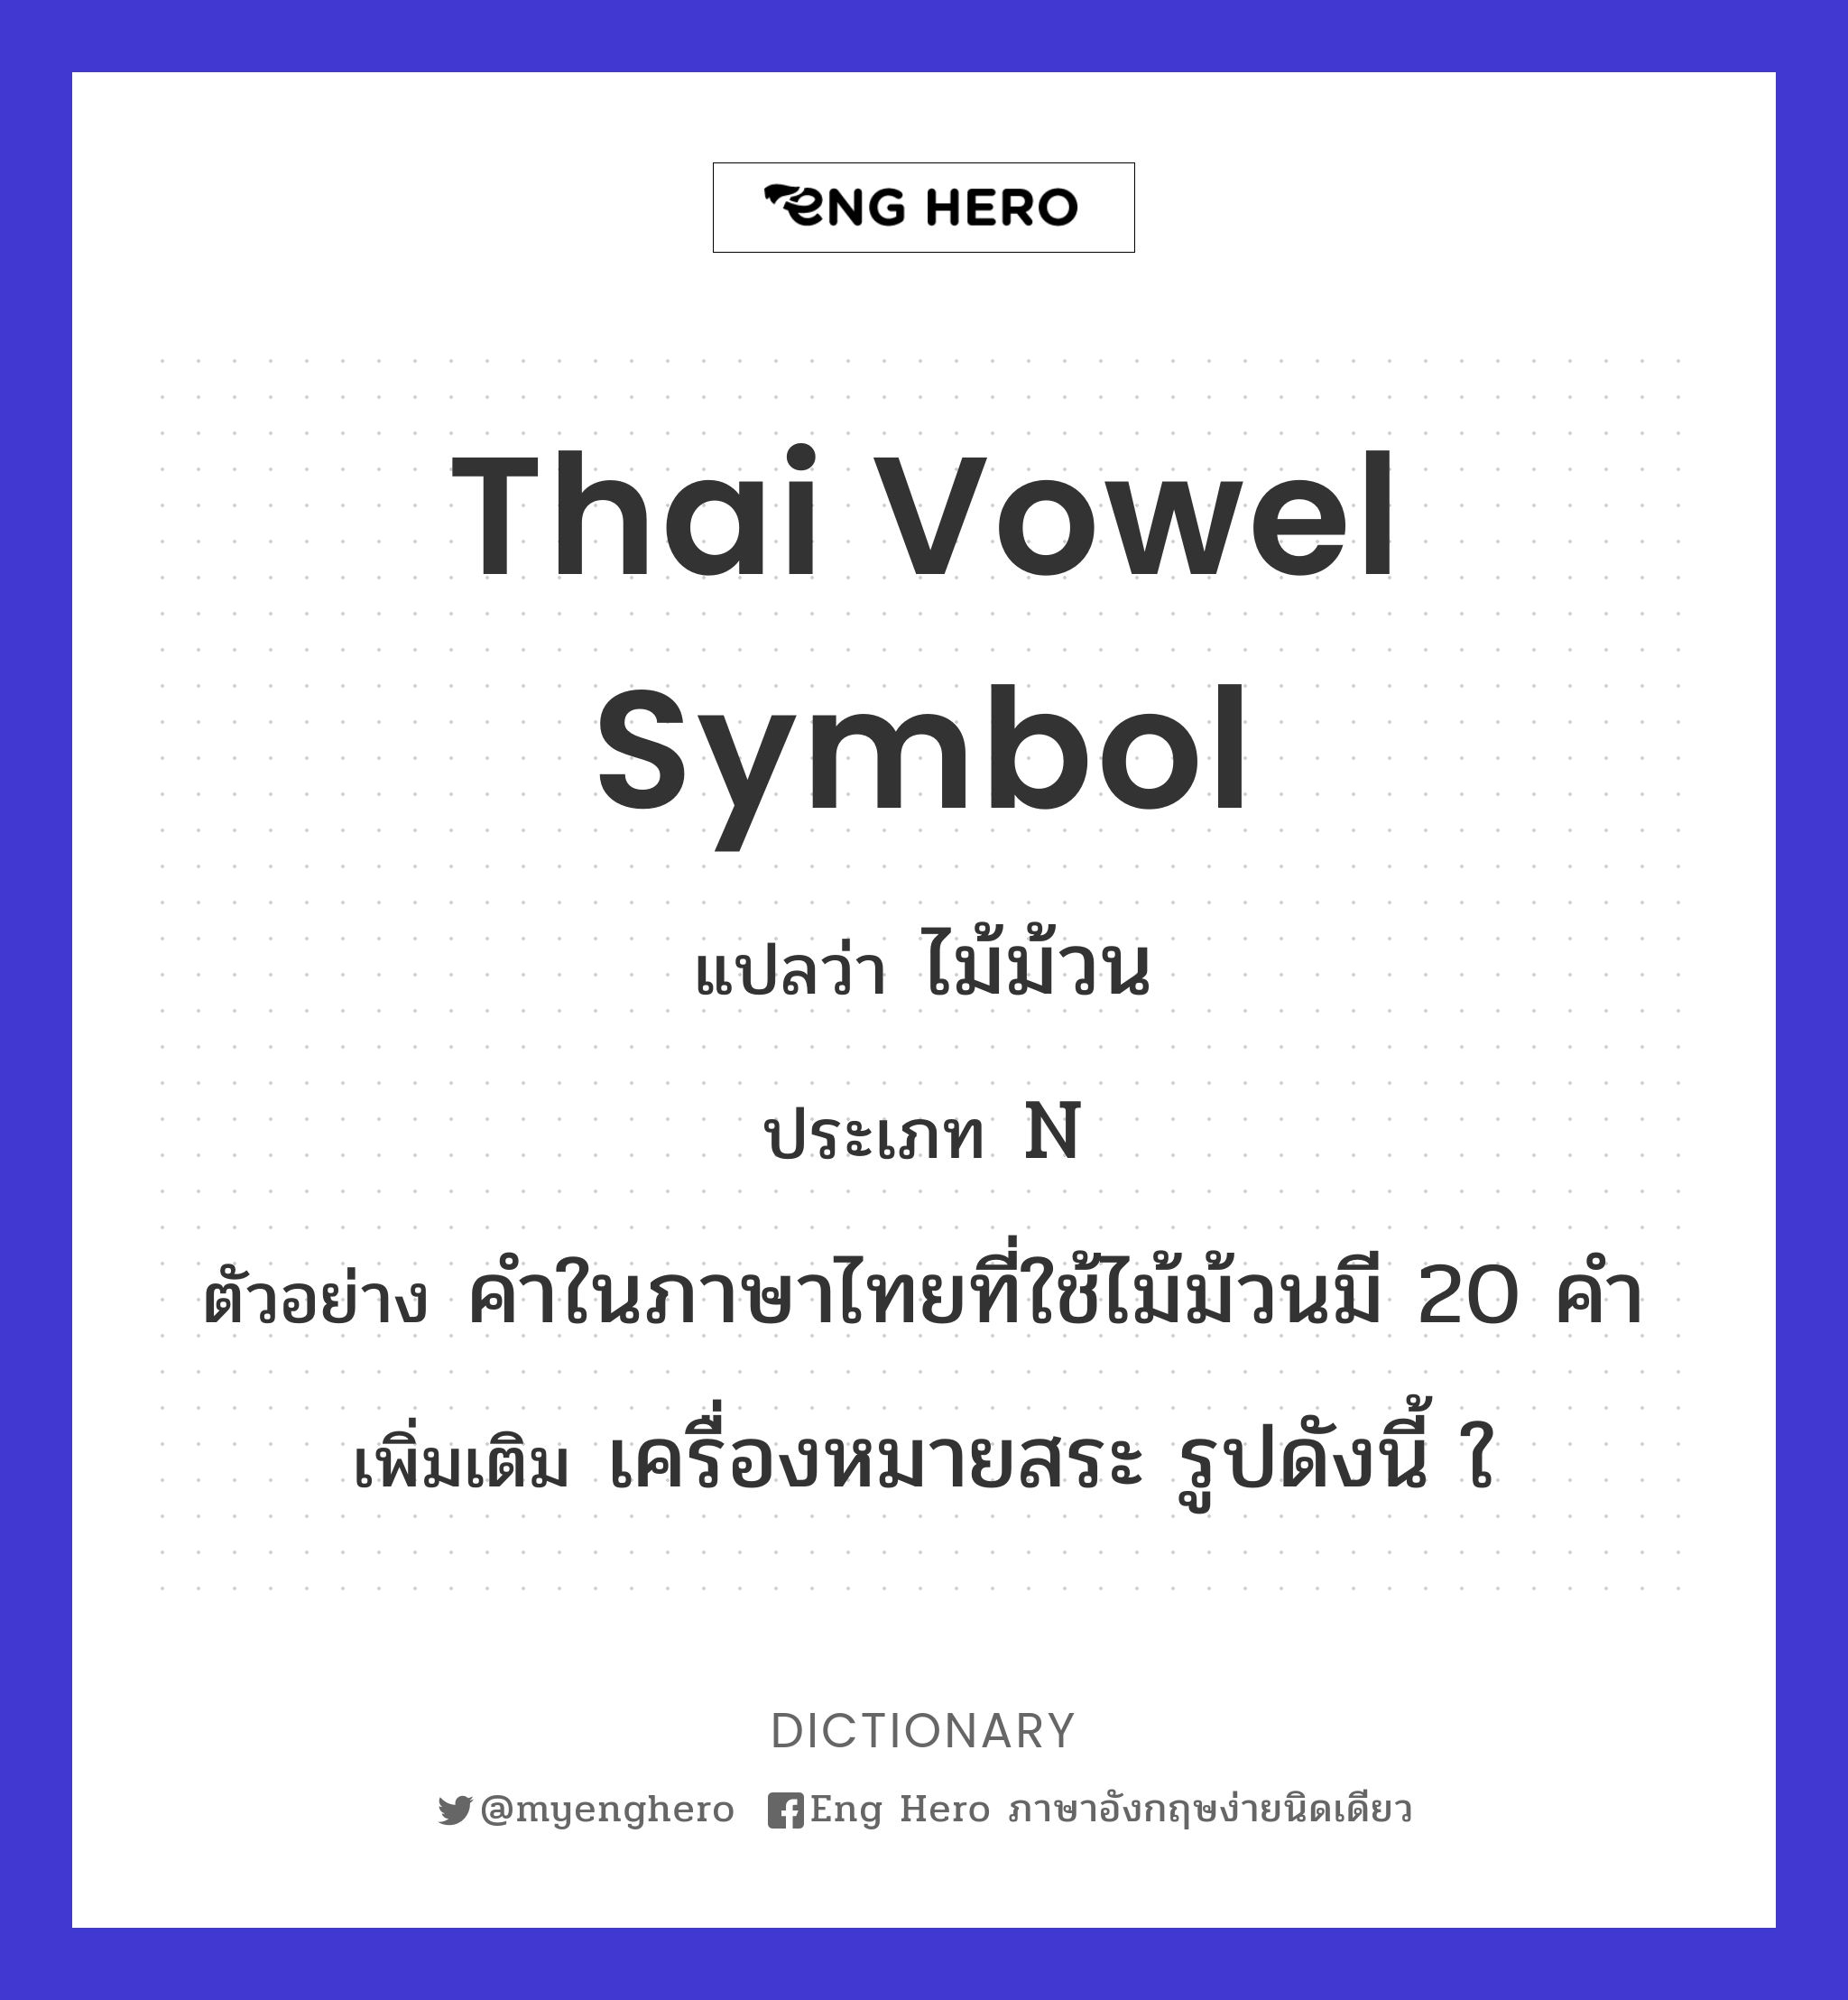 Thai vowel symbol